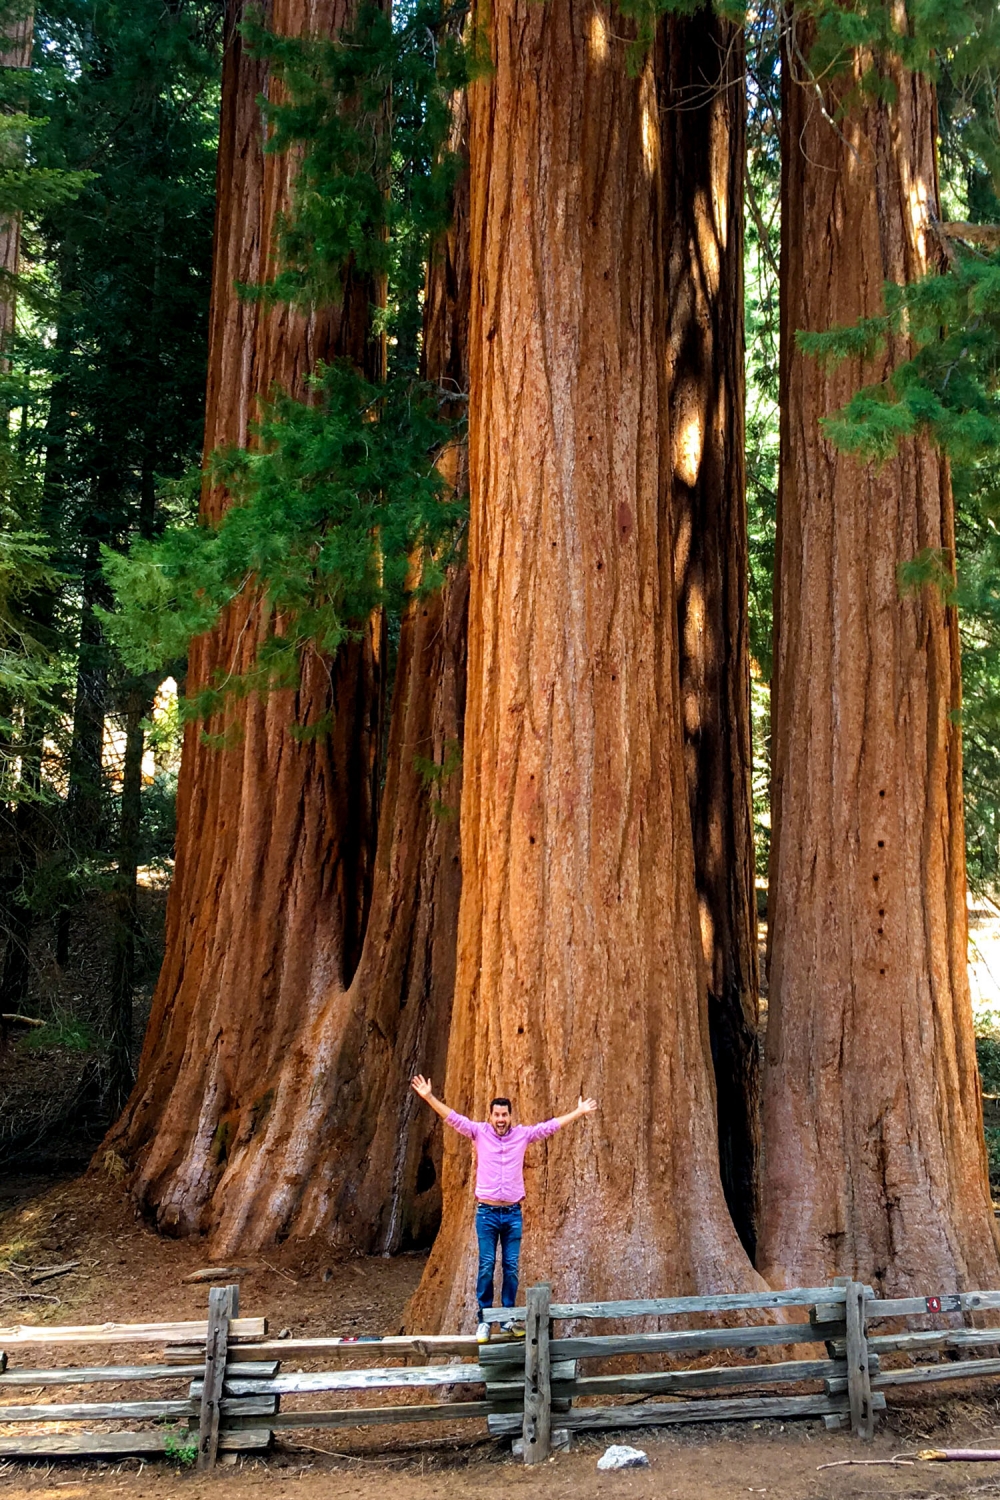 Khám phá công viên Sequoia, đọ dáng với những gốc cây cổ thụ khổng lồ hàng nghìn năm tuổi